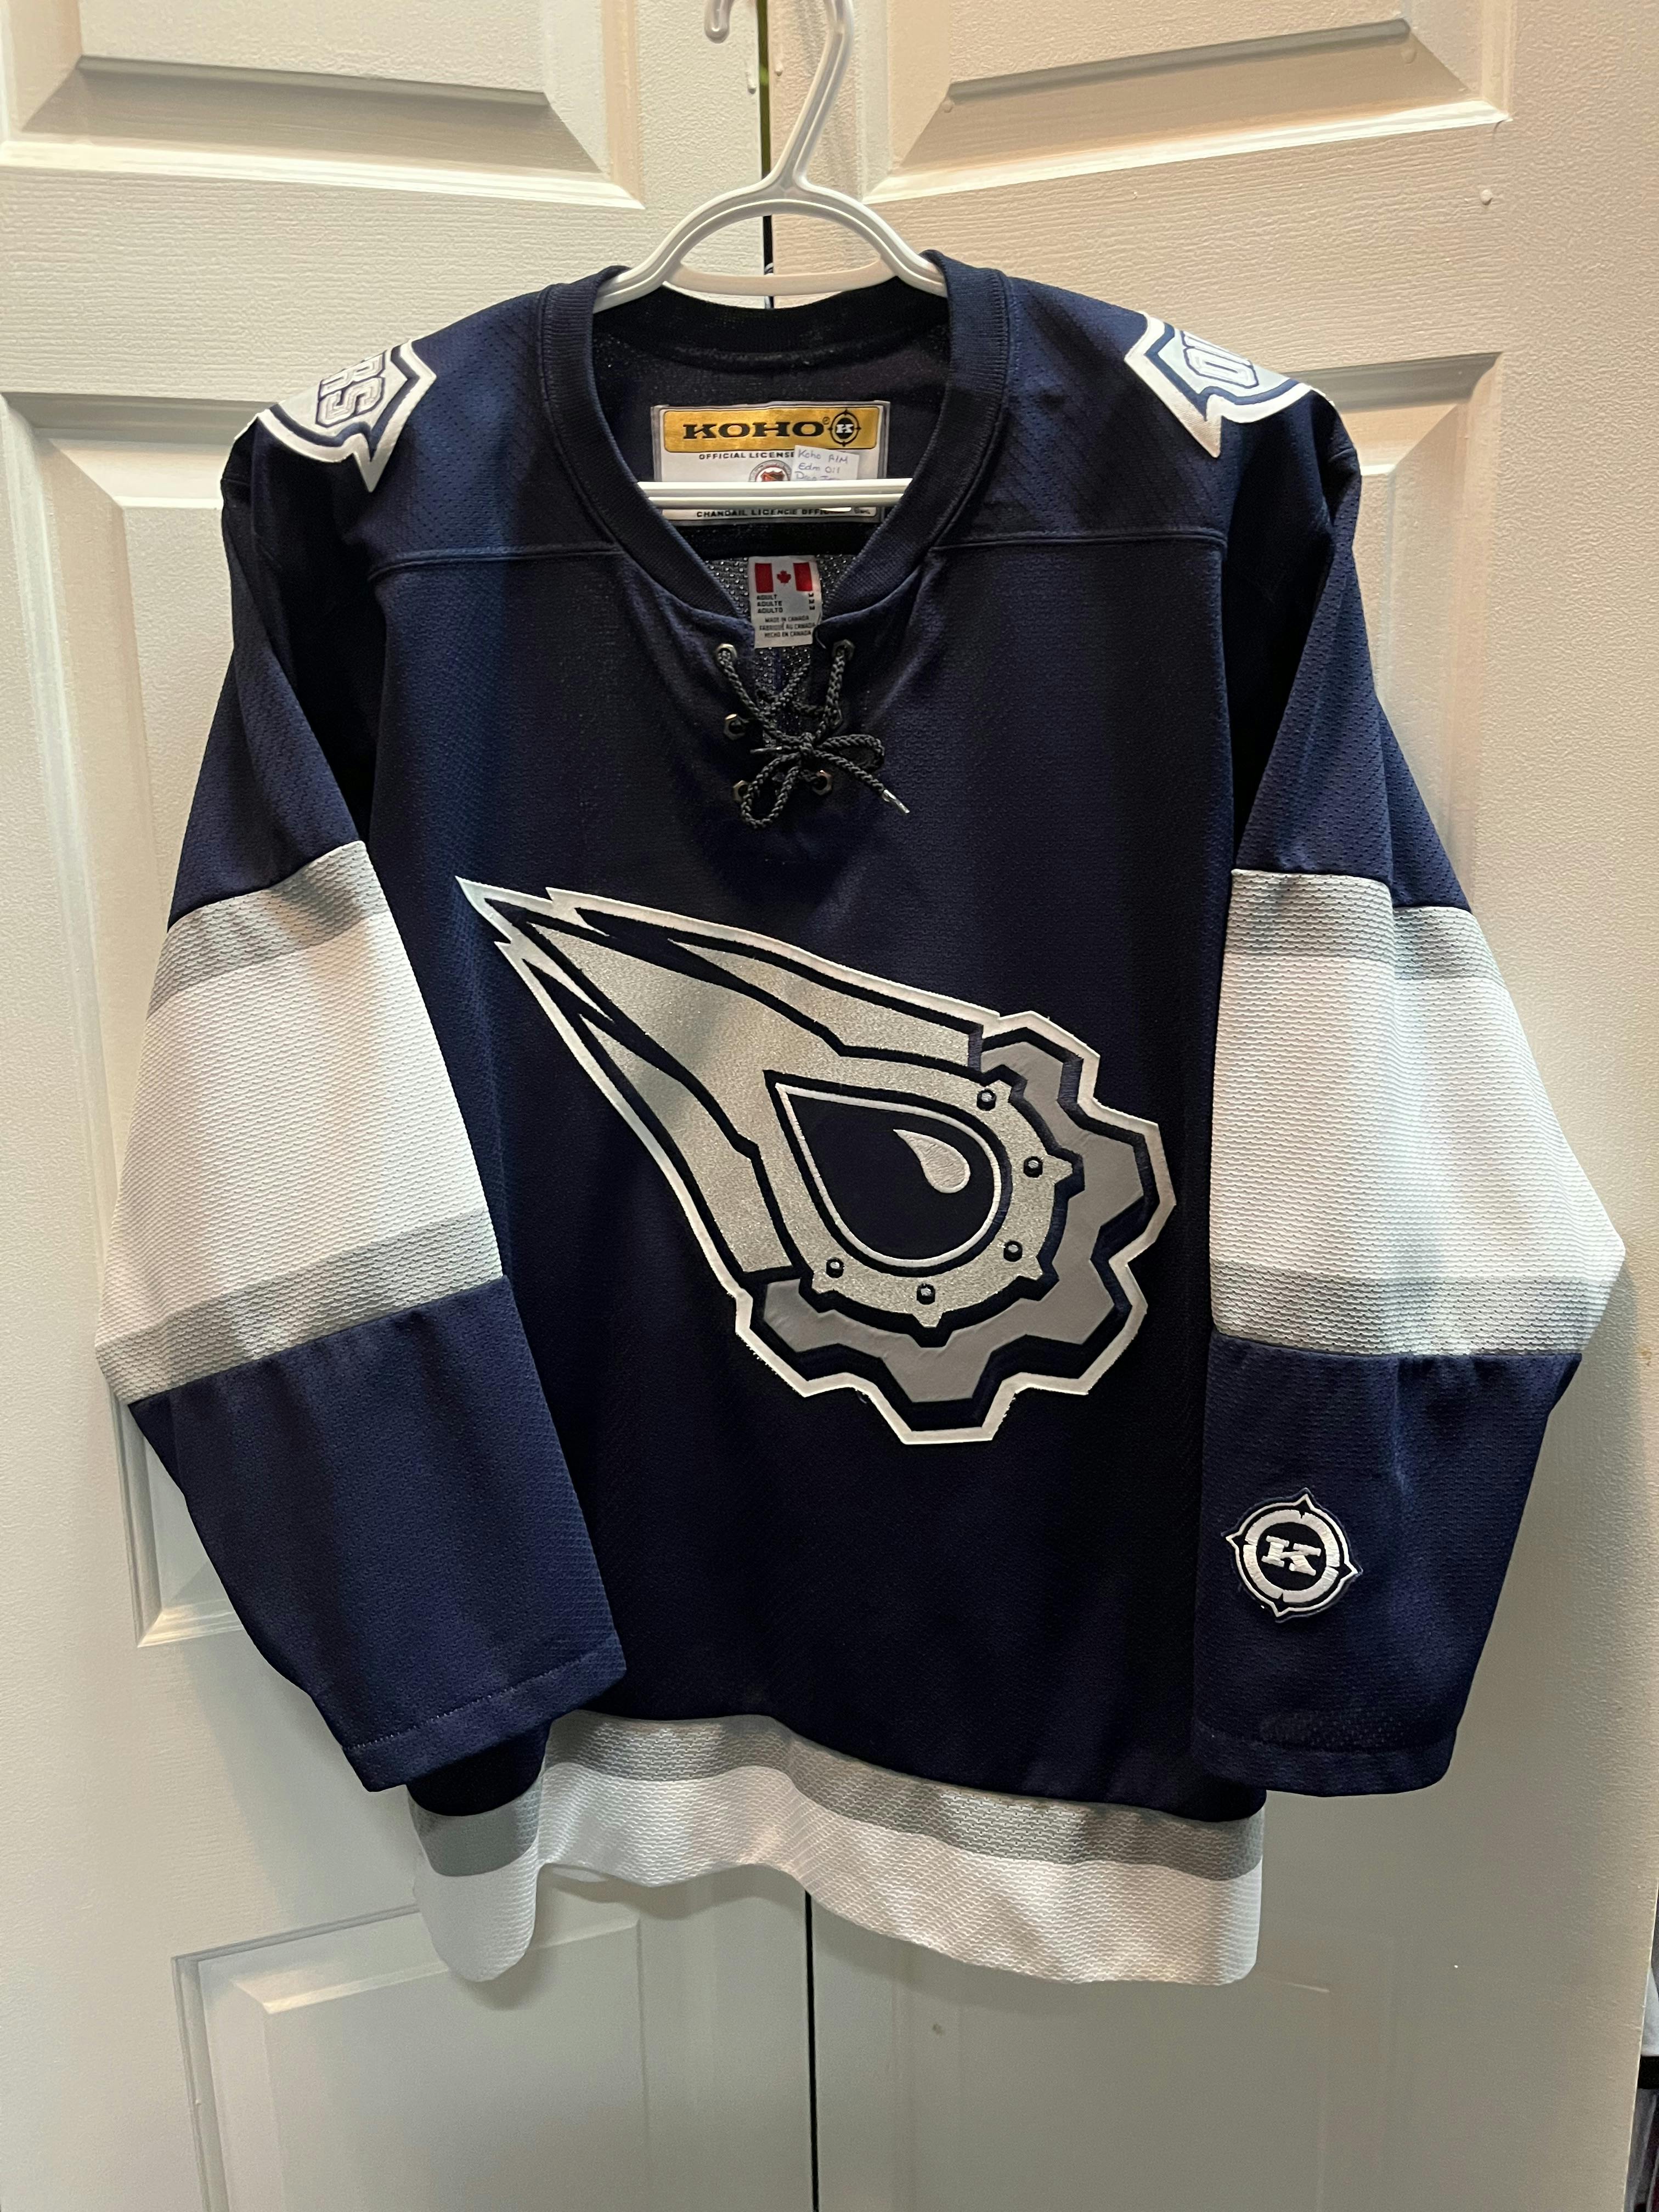 Columbus-blue-jackets Jersey / Vintage NHL Hockey / KOHO 